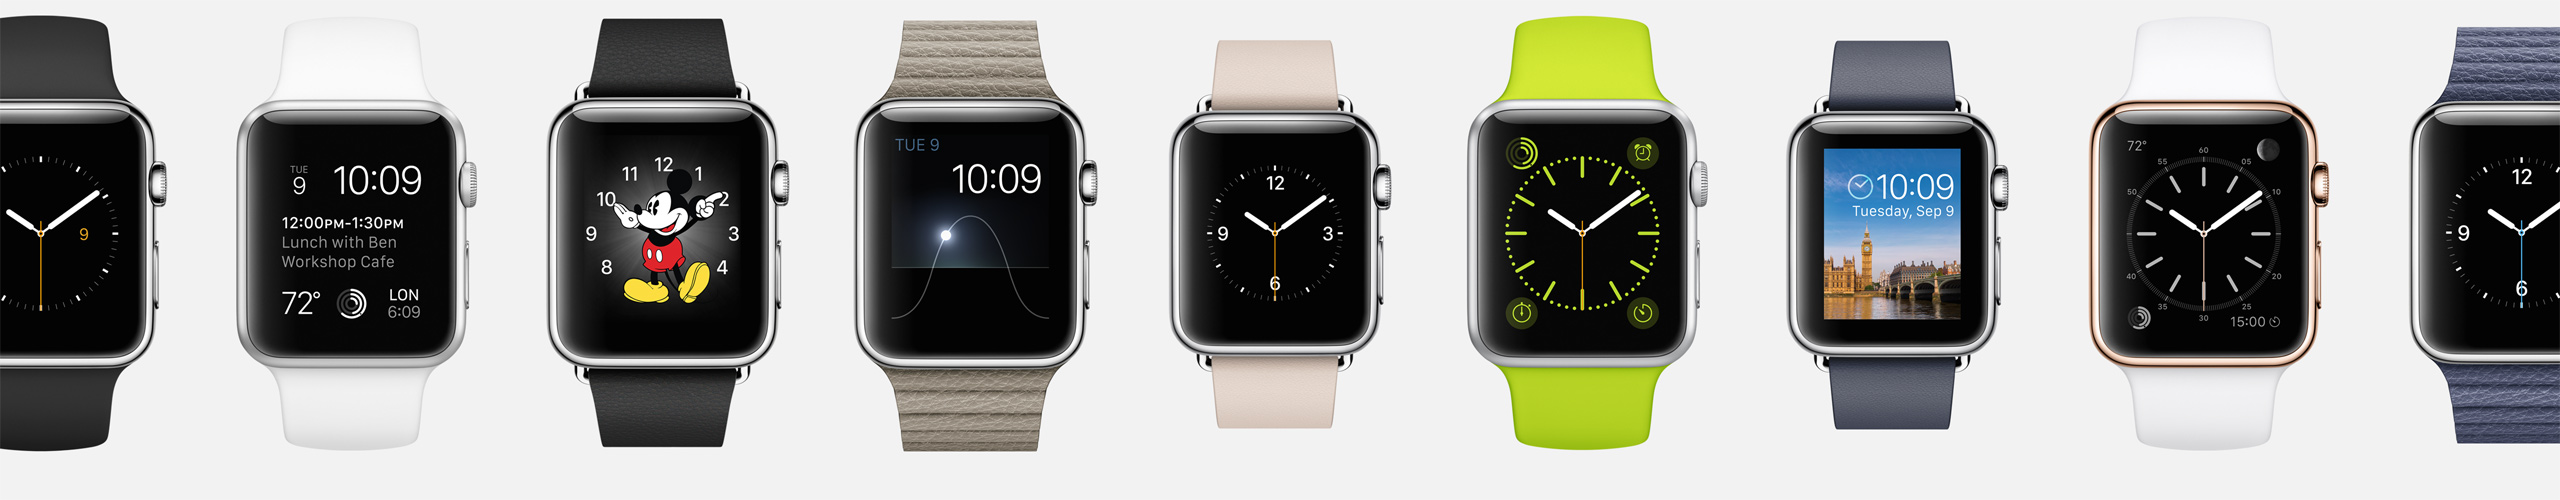  كل ماتــريد معــرفته عن ساعة أبــل الذكيــة أبل ووتش – Apple Watch